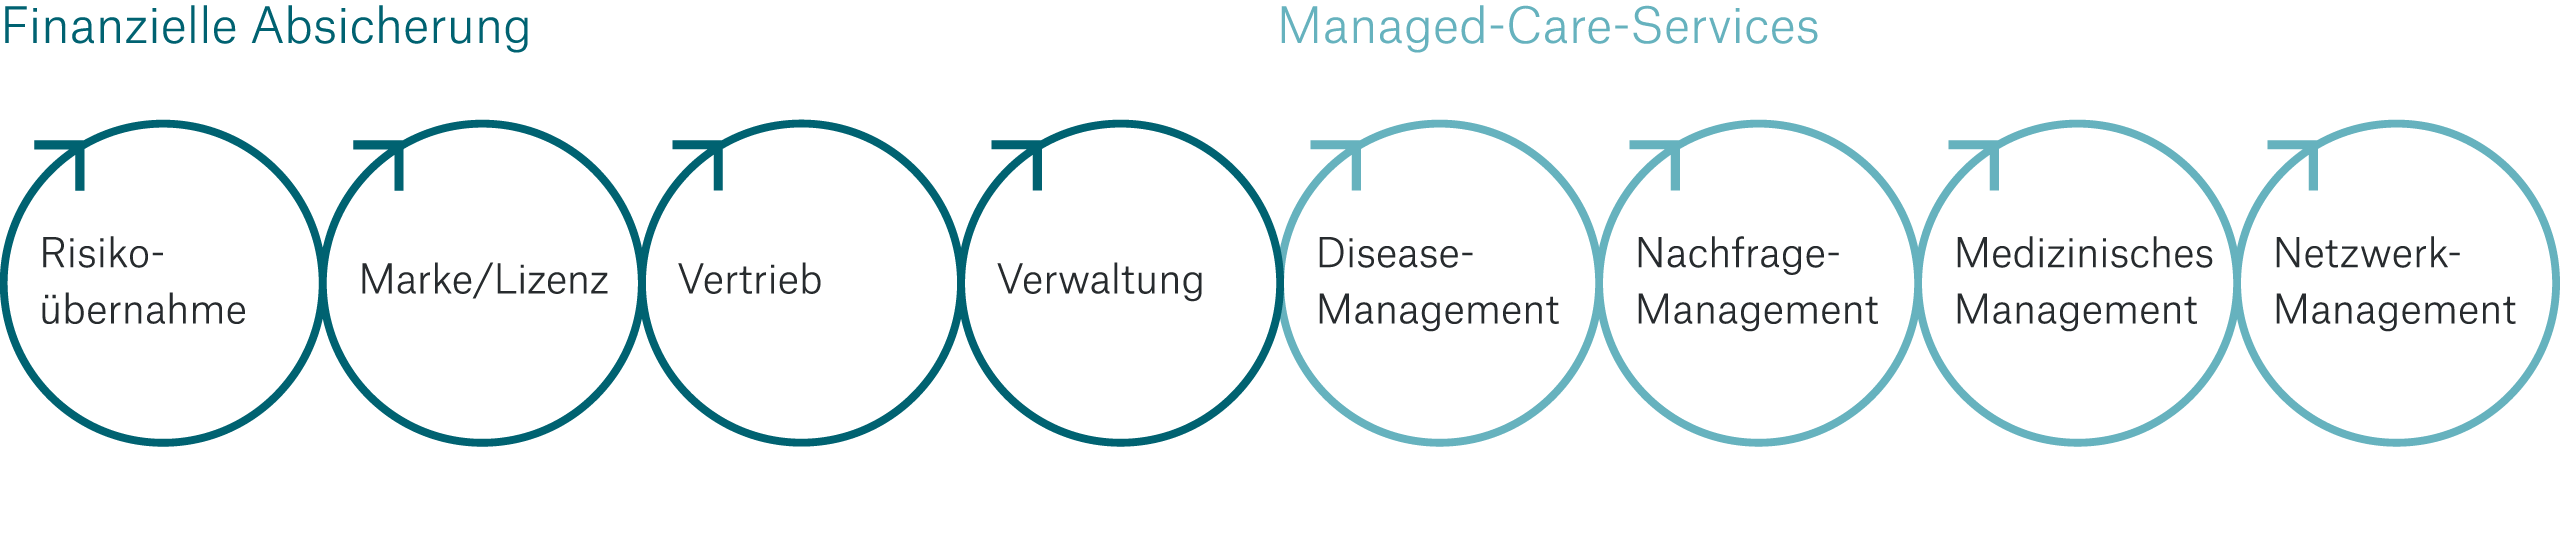 Grafik zeigt die Wertschöpfungskette im Gesundheitsmarkt. 1. Finanzielle Absicherung mit Risikoübernahme, Marke und Lizenz, Vertrieb, Verwaltung. 2. Managed-Care-Services mit Disease-Management, Nachfrage-, Medizinisches und Netzwerk-Management